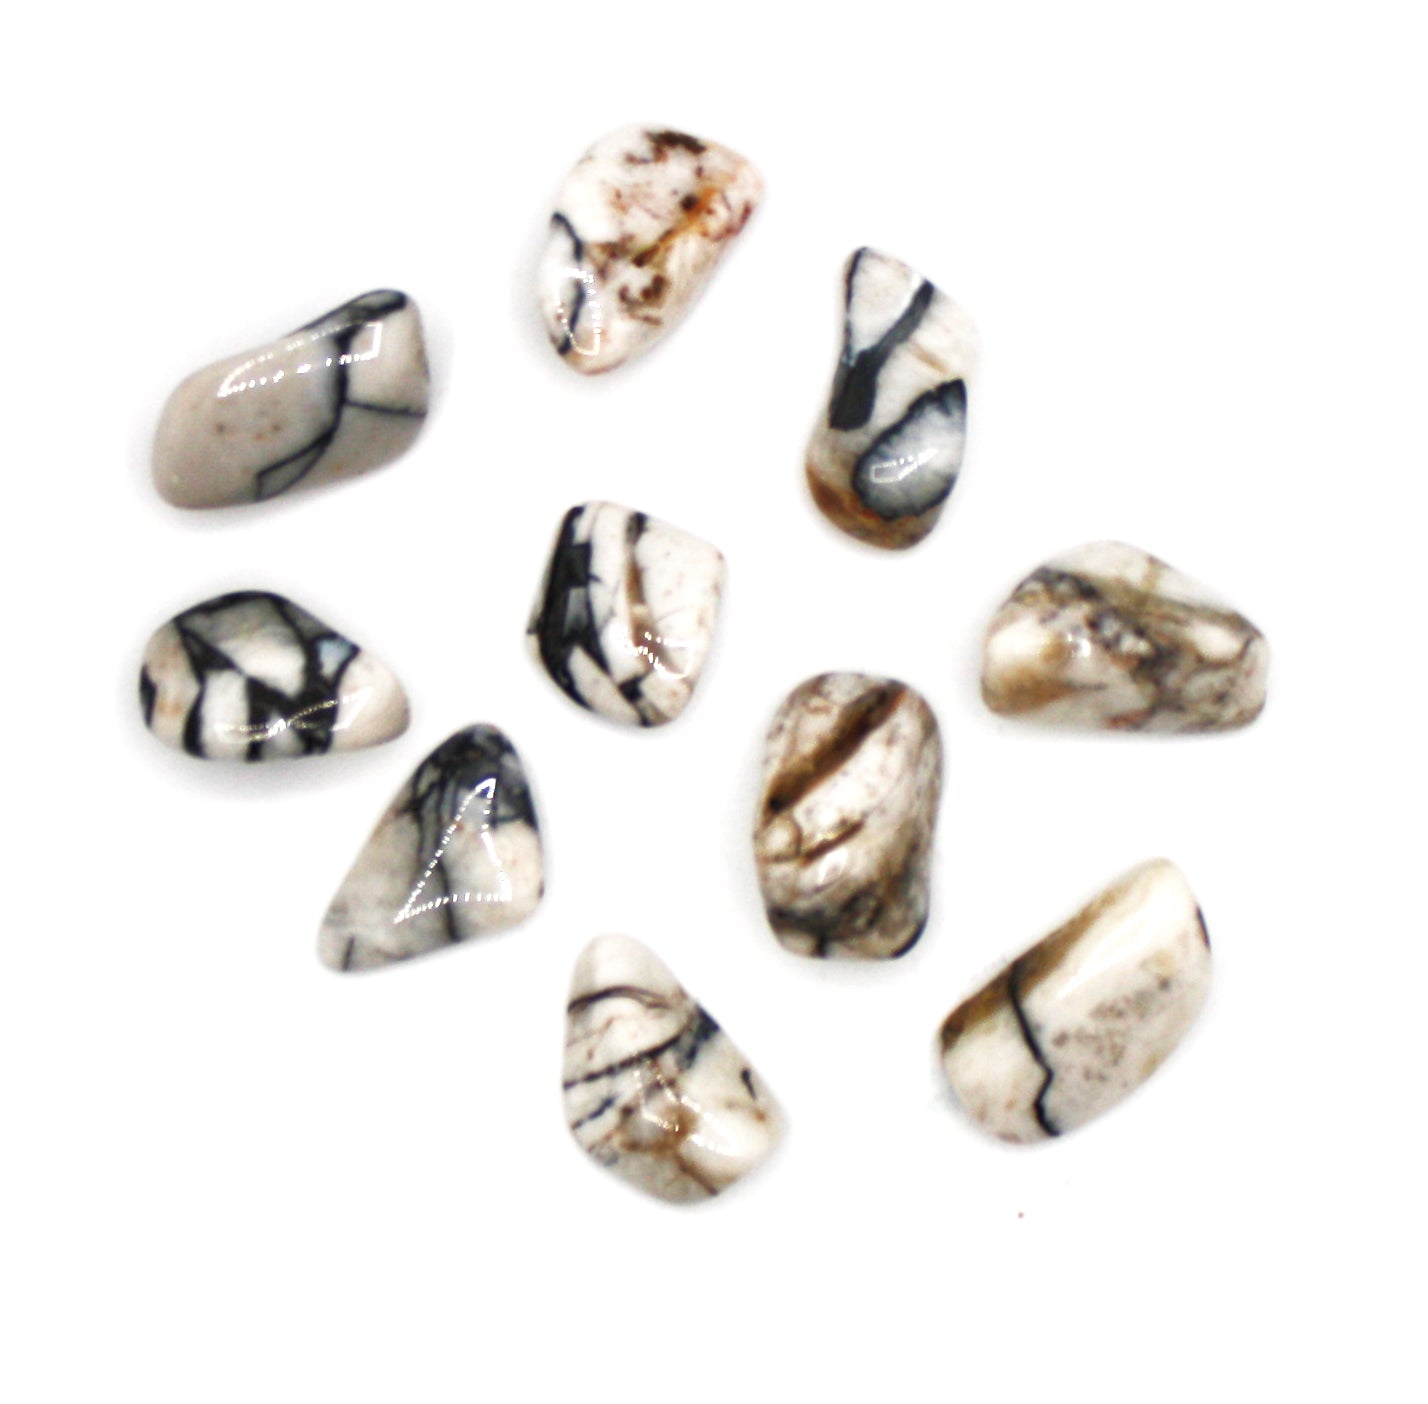 Cataclasite Polished Healing Crystal Tumble Stone